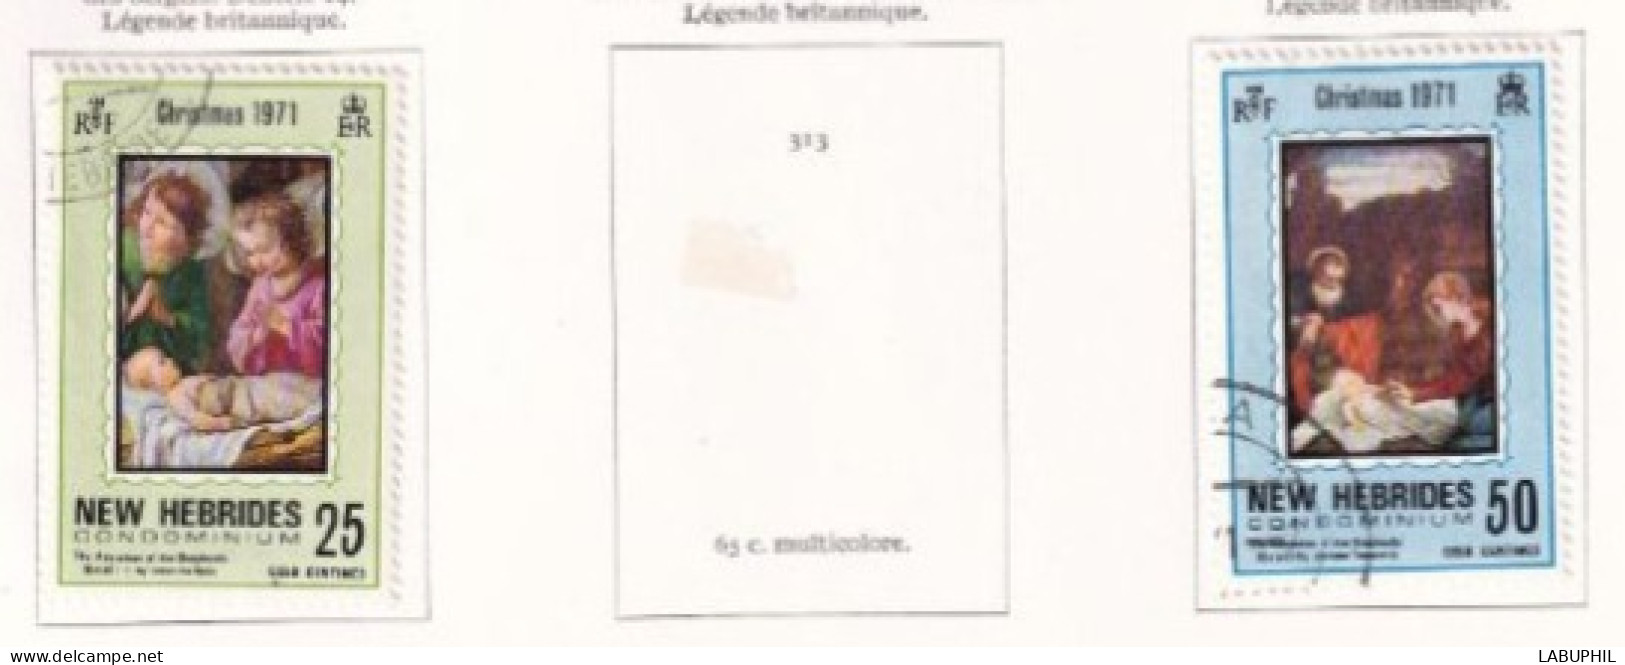 NOUVELLES HEBRIDES Dispersion D'une Collection Oblitéré Et Mlh   1971 - Gebruikt